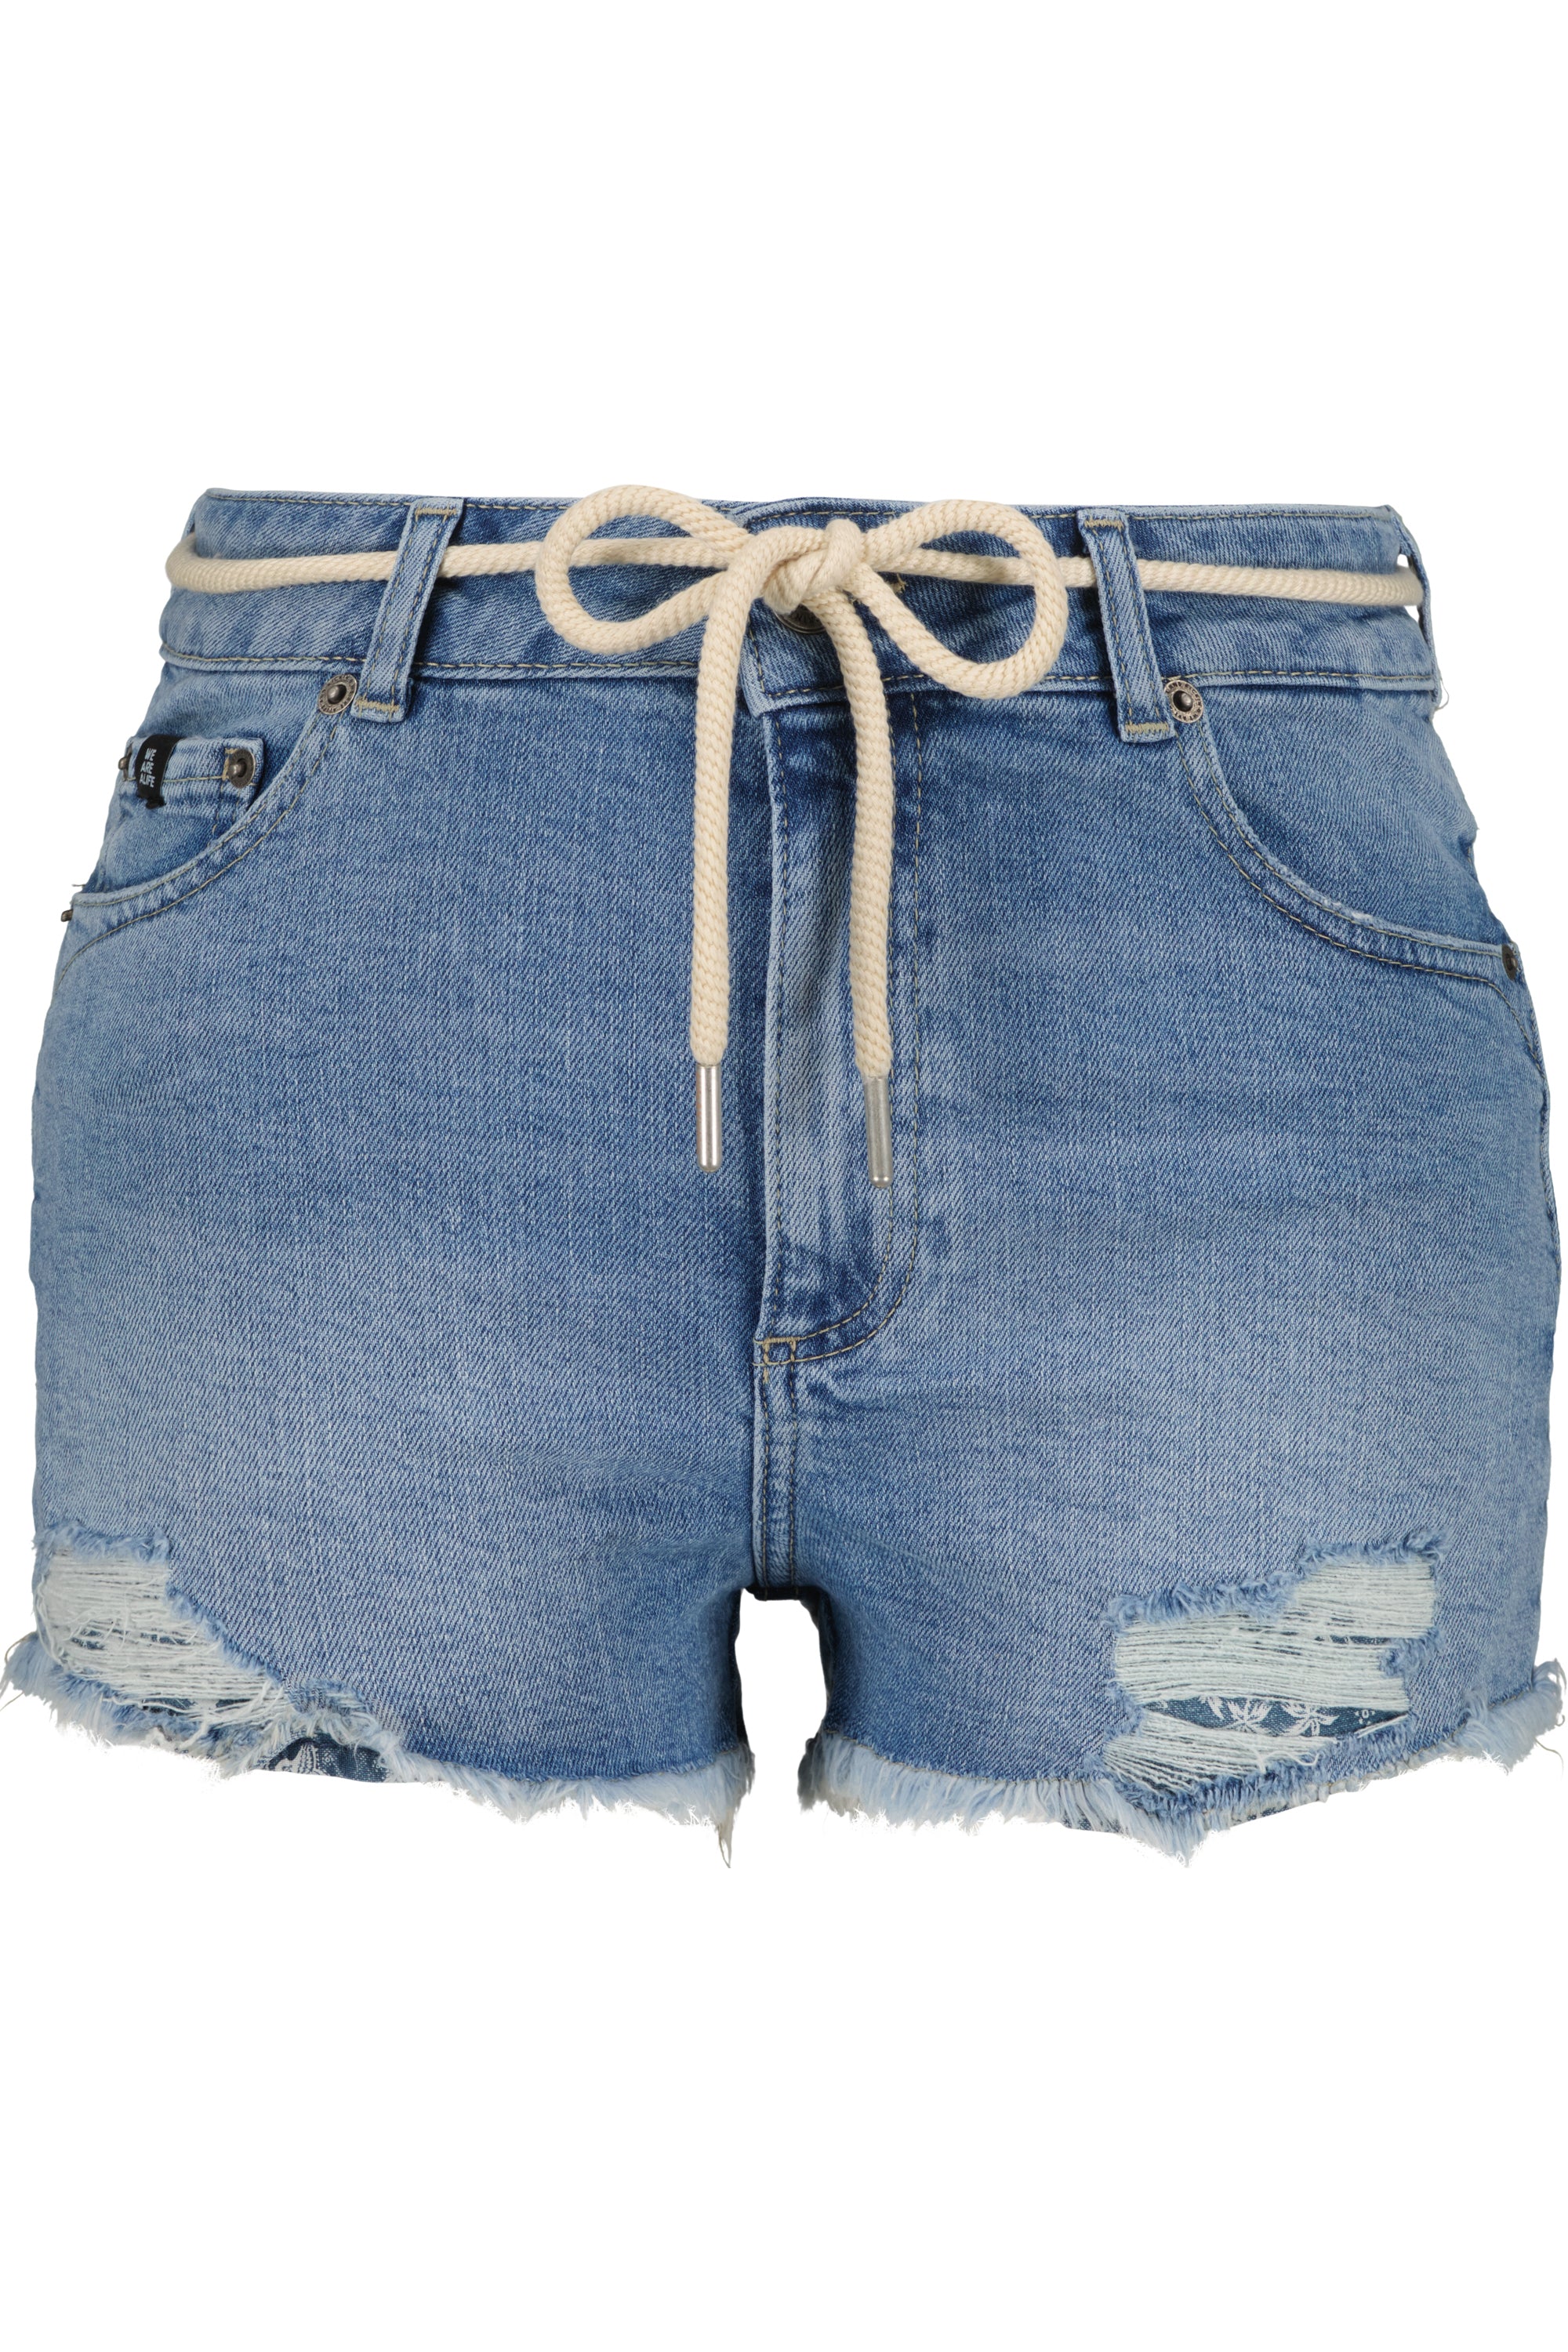 Stylische Hotpants: LatoyaAK DNM A für Frauen Hellblau